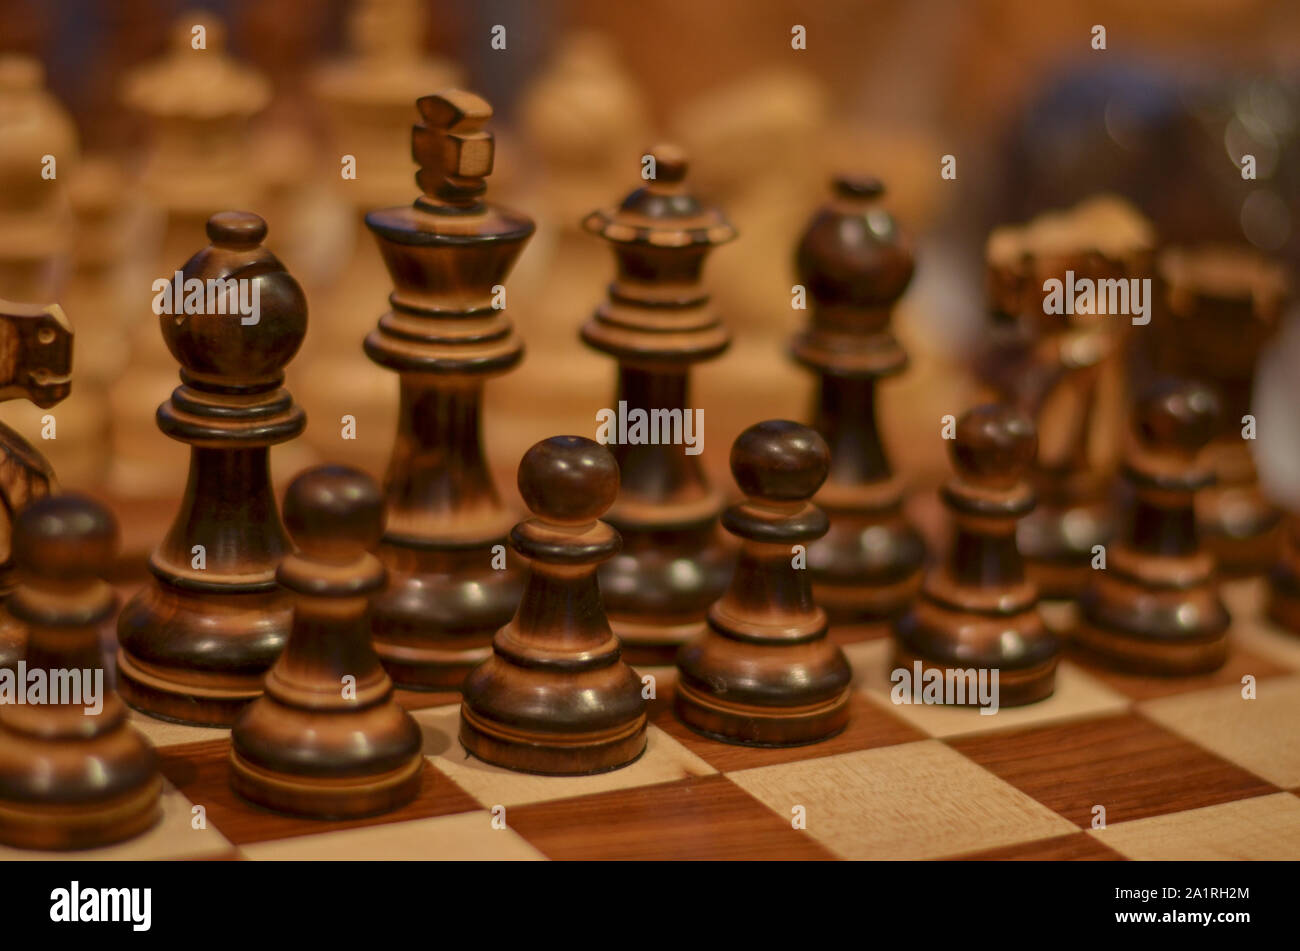 Libre d'un échiquier en bois. Chess est un jeu de stratégie à deux joueurs qui se joue sur un conseil à damier avec 64 carrés Banque D'Images